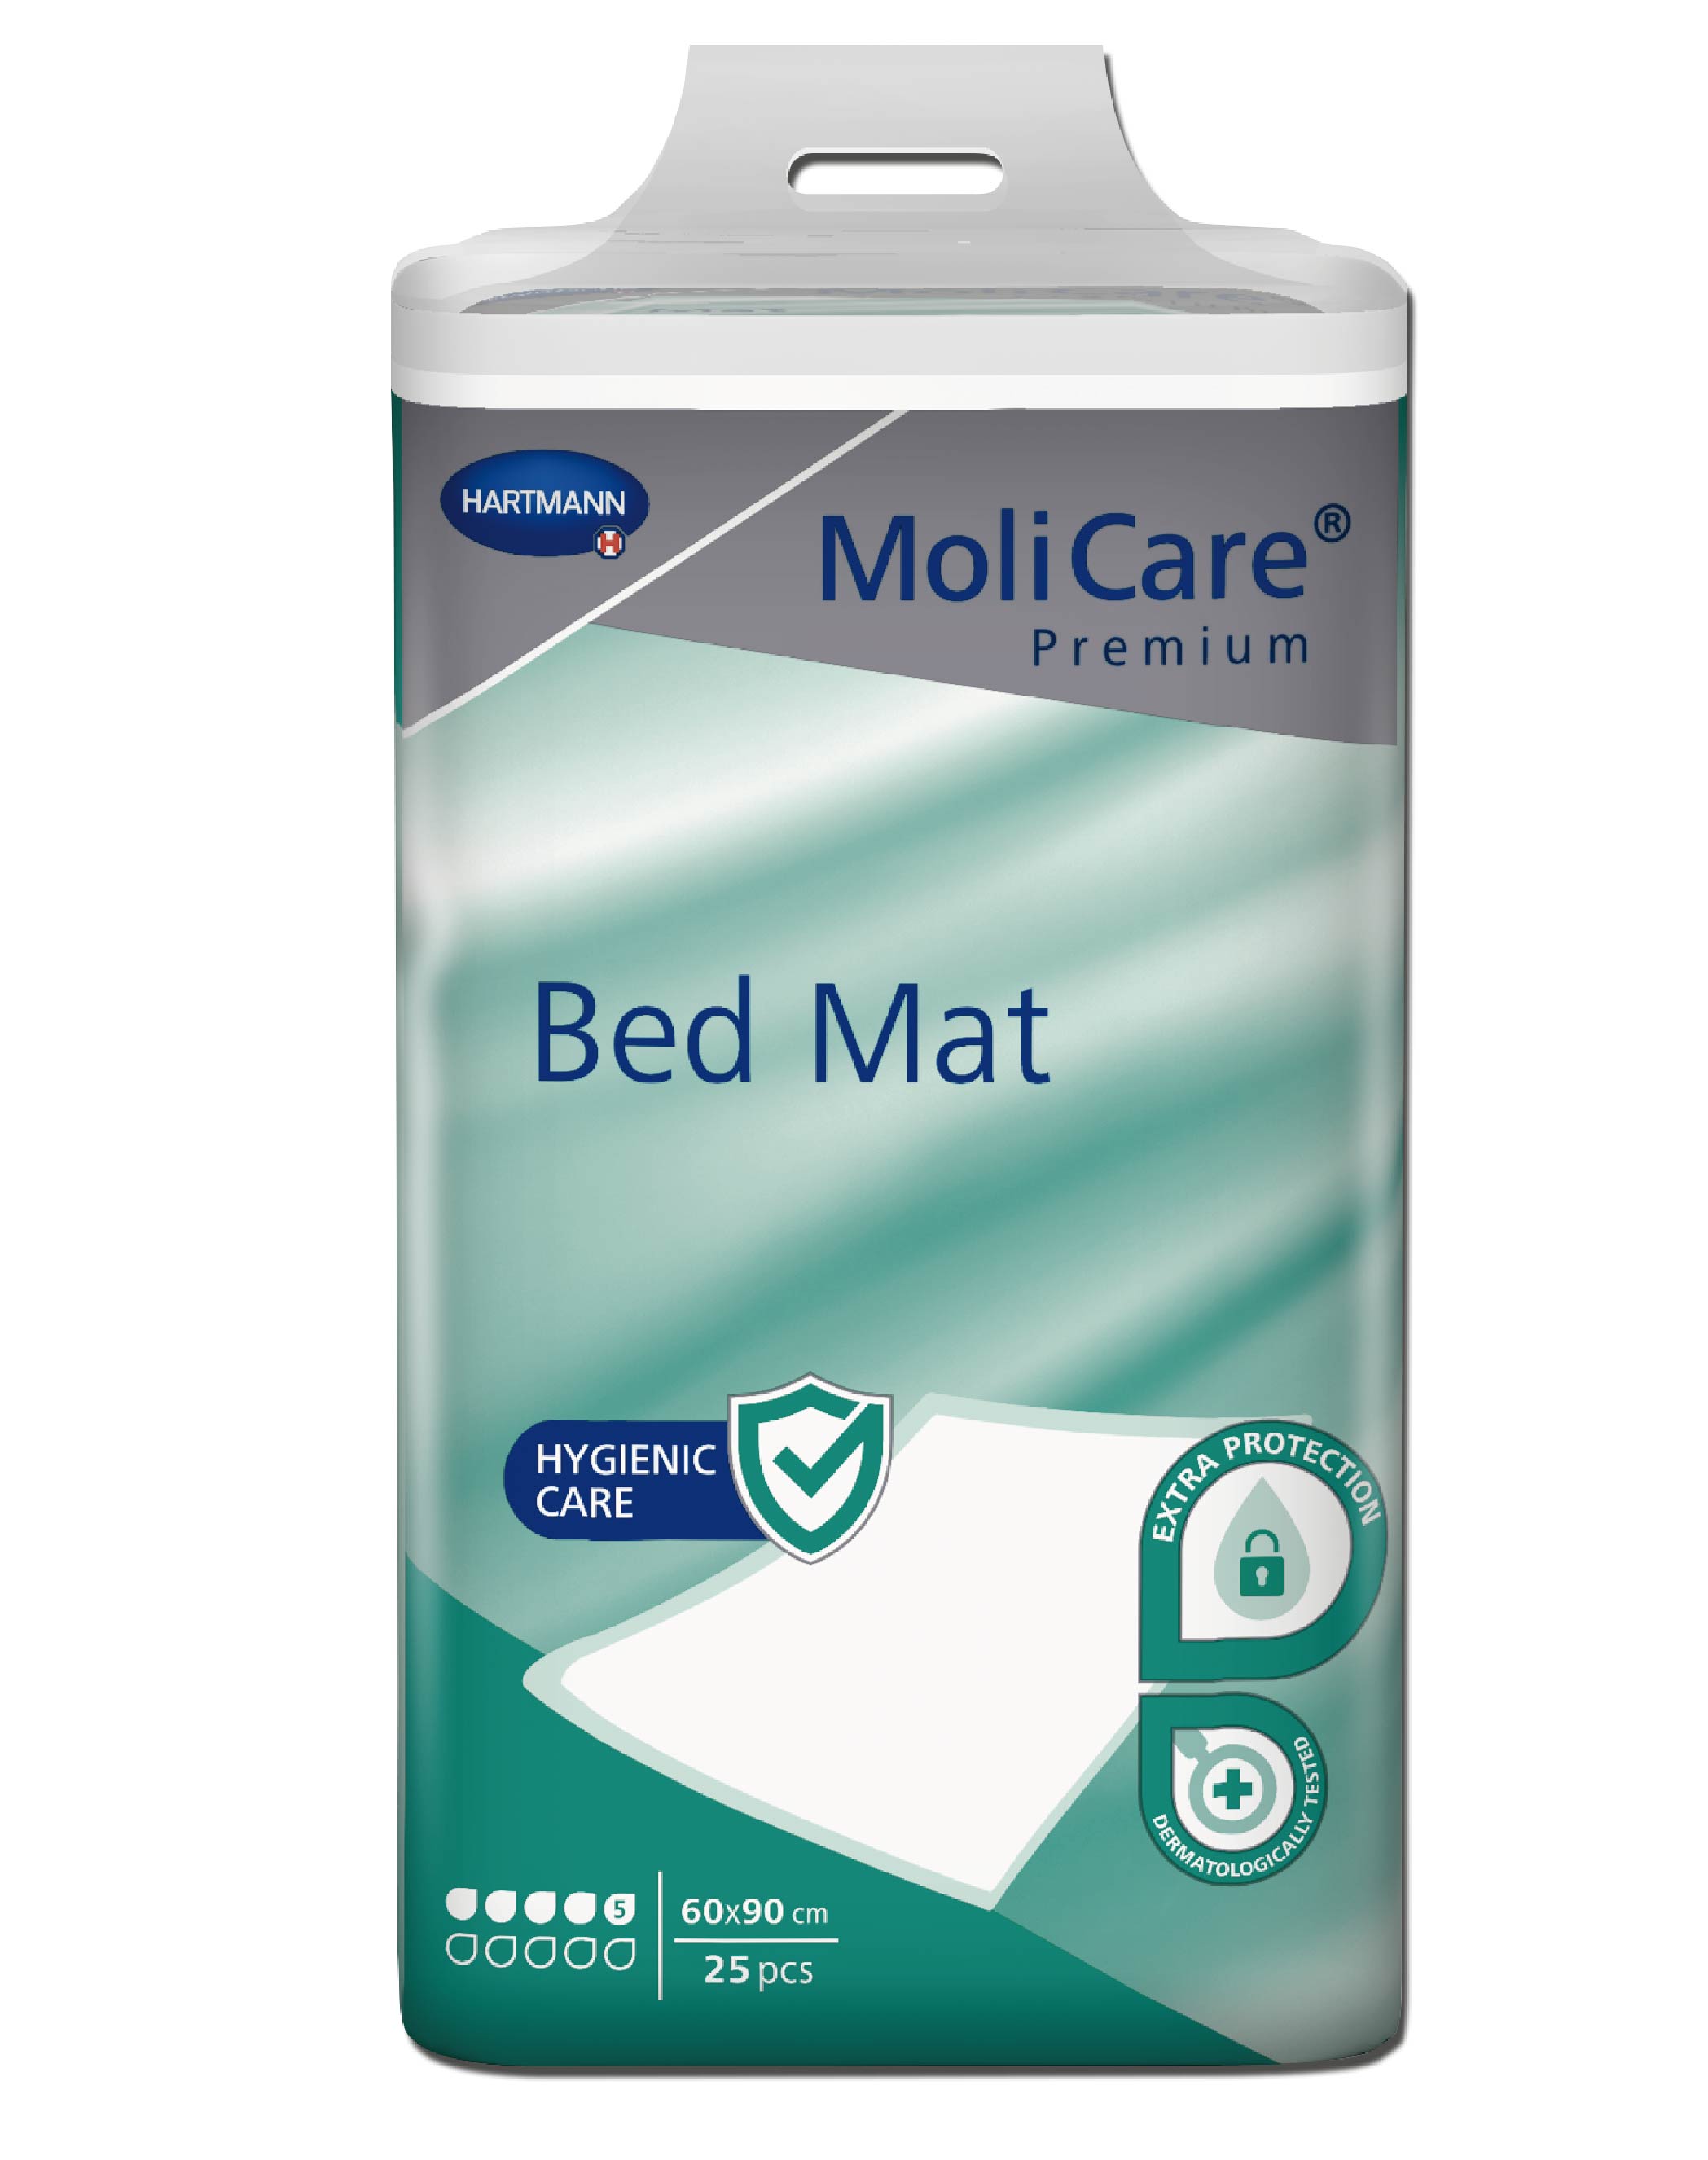 MoliCare Premium Bed Mat 60x90cm 5 drops 120